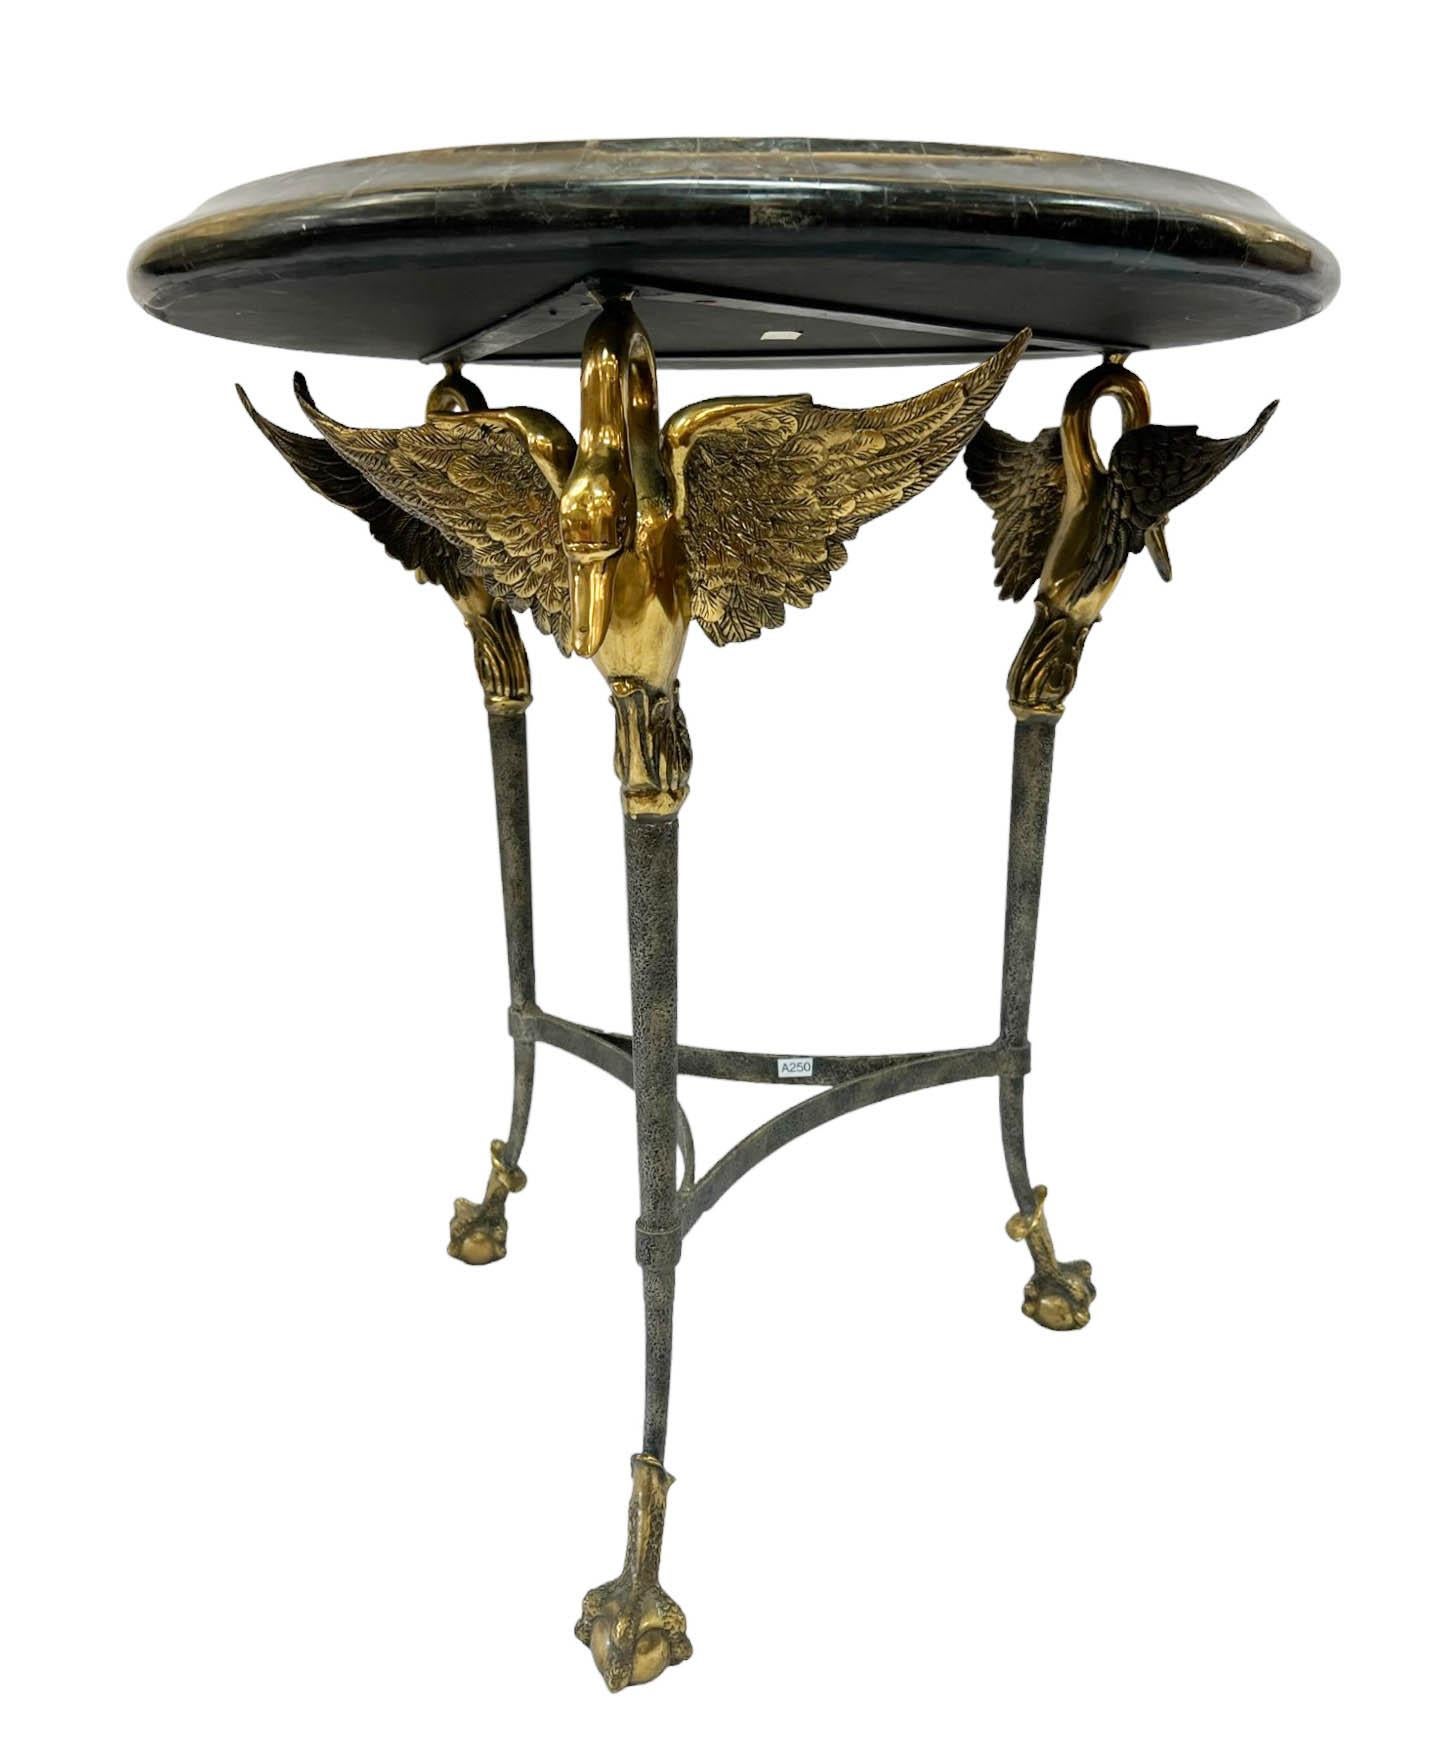 Schöner Beistelltisch im neoklassizistischen Stil von Maitland Smith. Der Tisch hat eine Platte mit Marmorintarsien, die von drei Schwanenfüßen getragen wird. Ein prächtiger Schwan mit offenen Flügeln aus Messing krönt jedes Tischbein. Dieses Stück